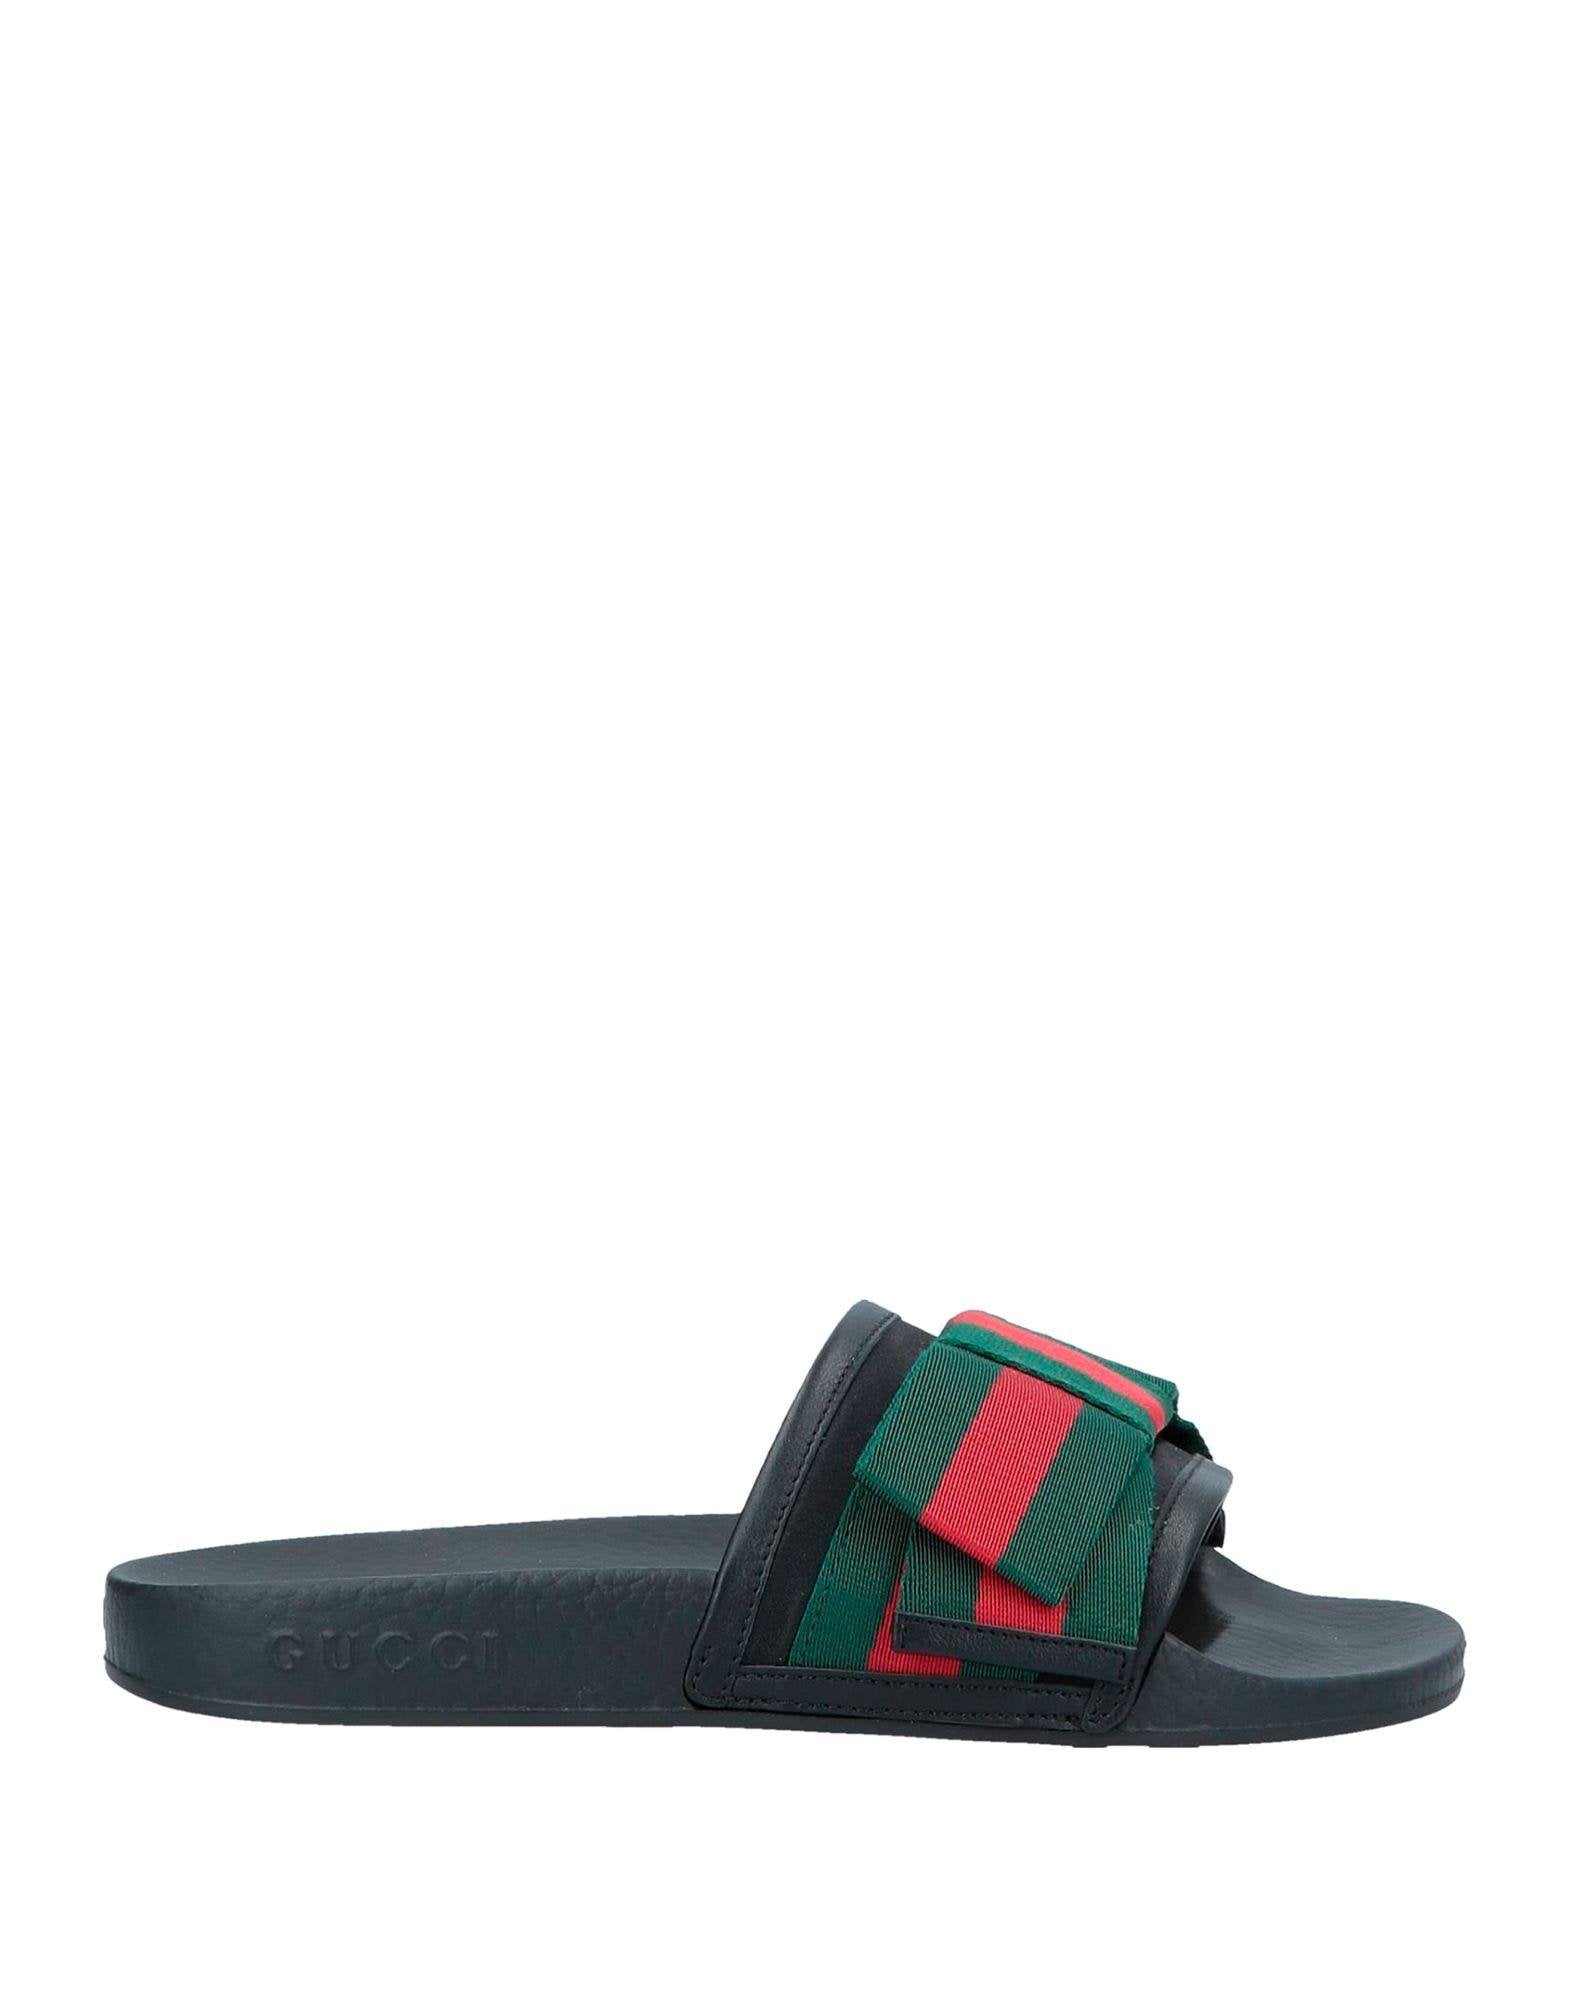 Gucci Pursuit Web Bow Slide Sandals - Closet Upgrade